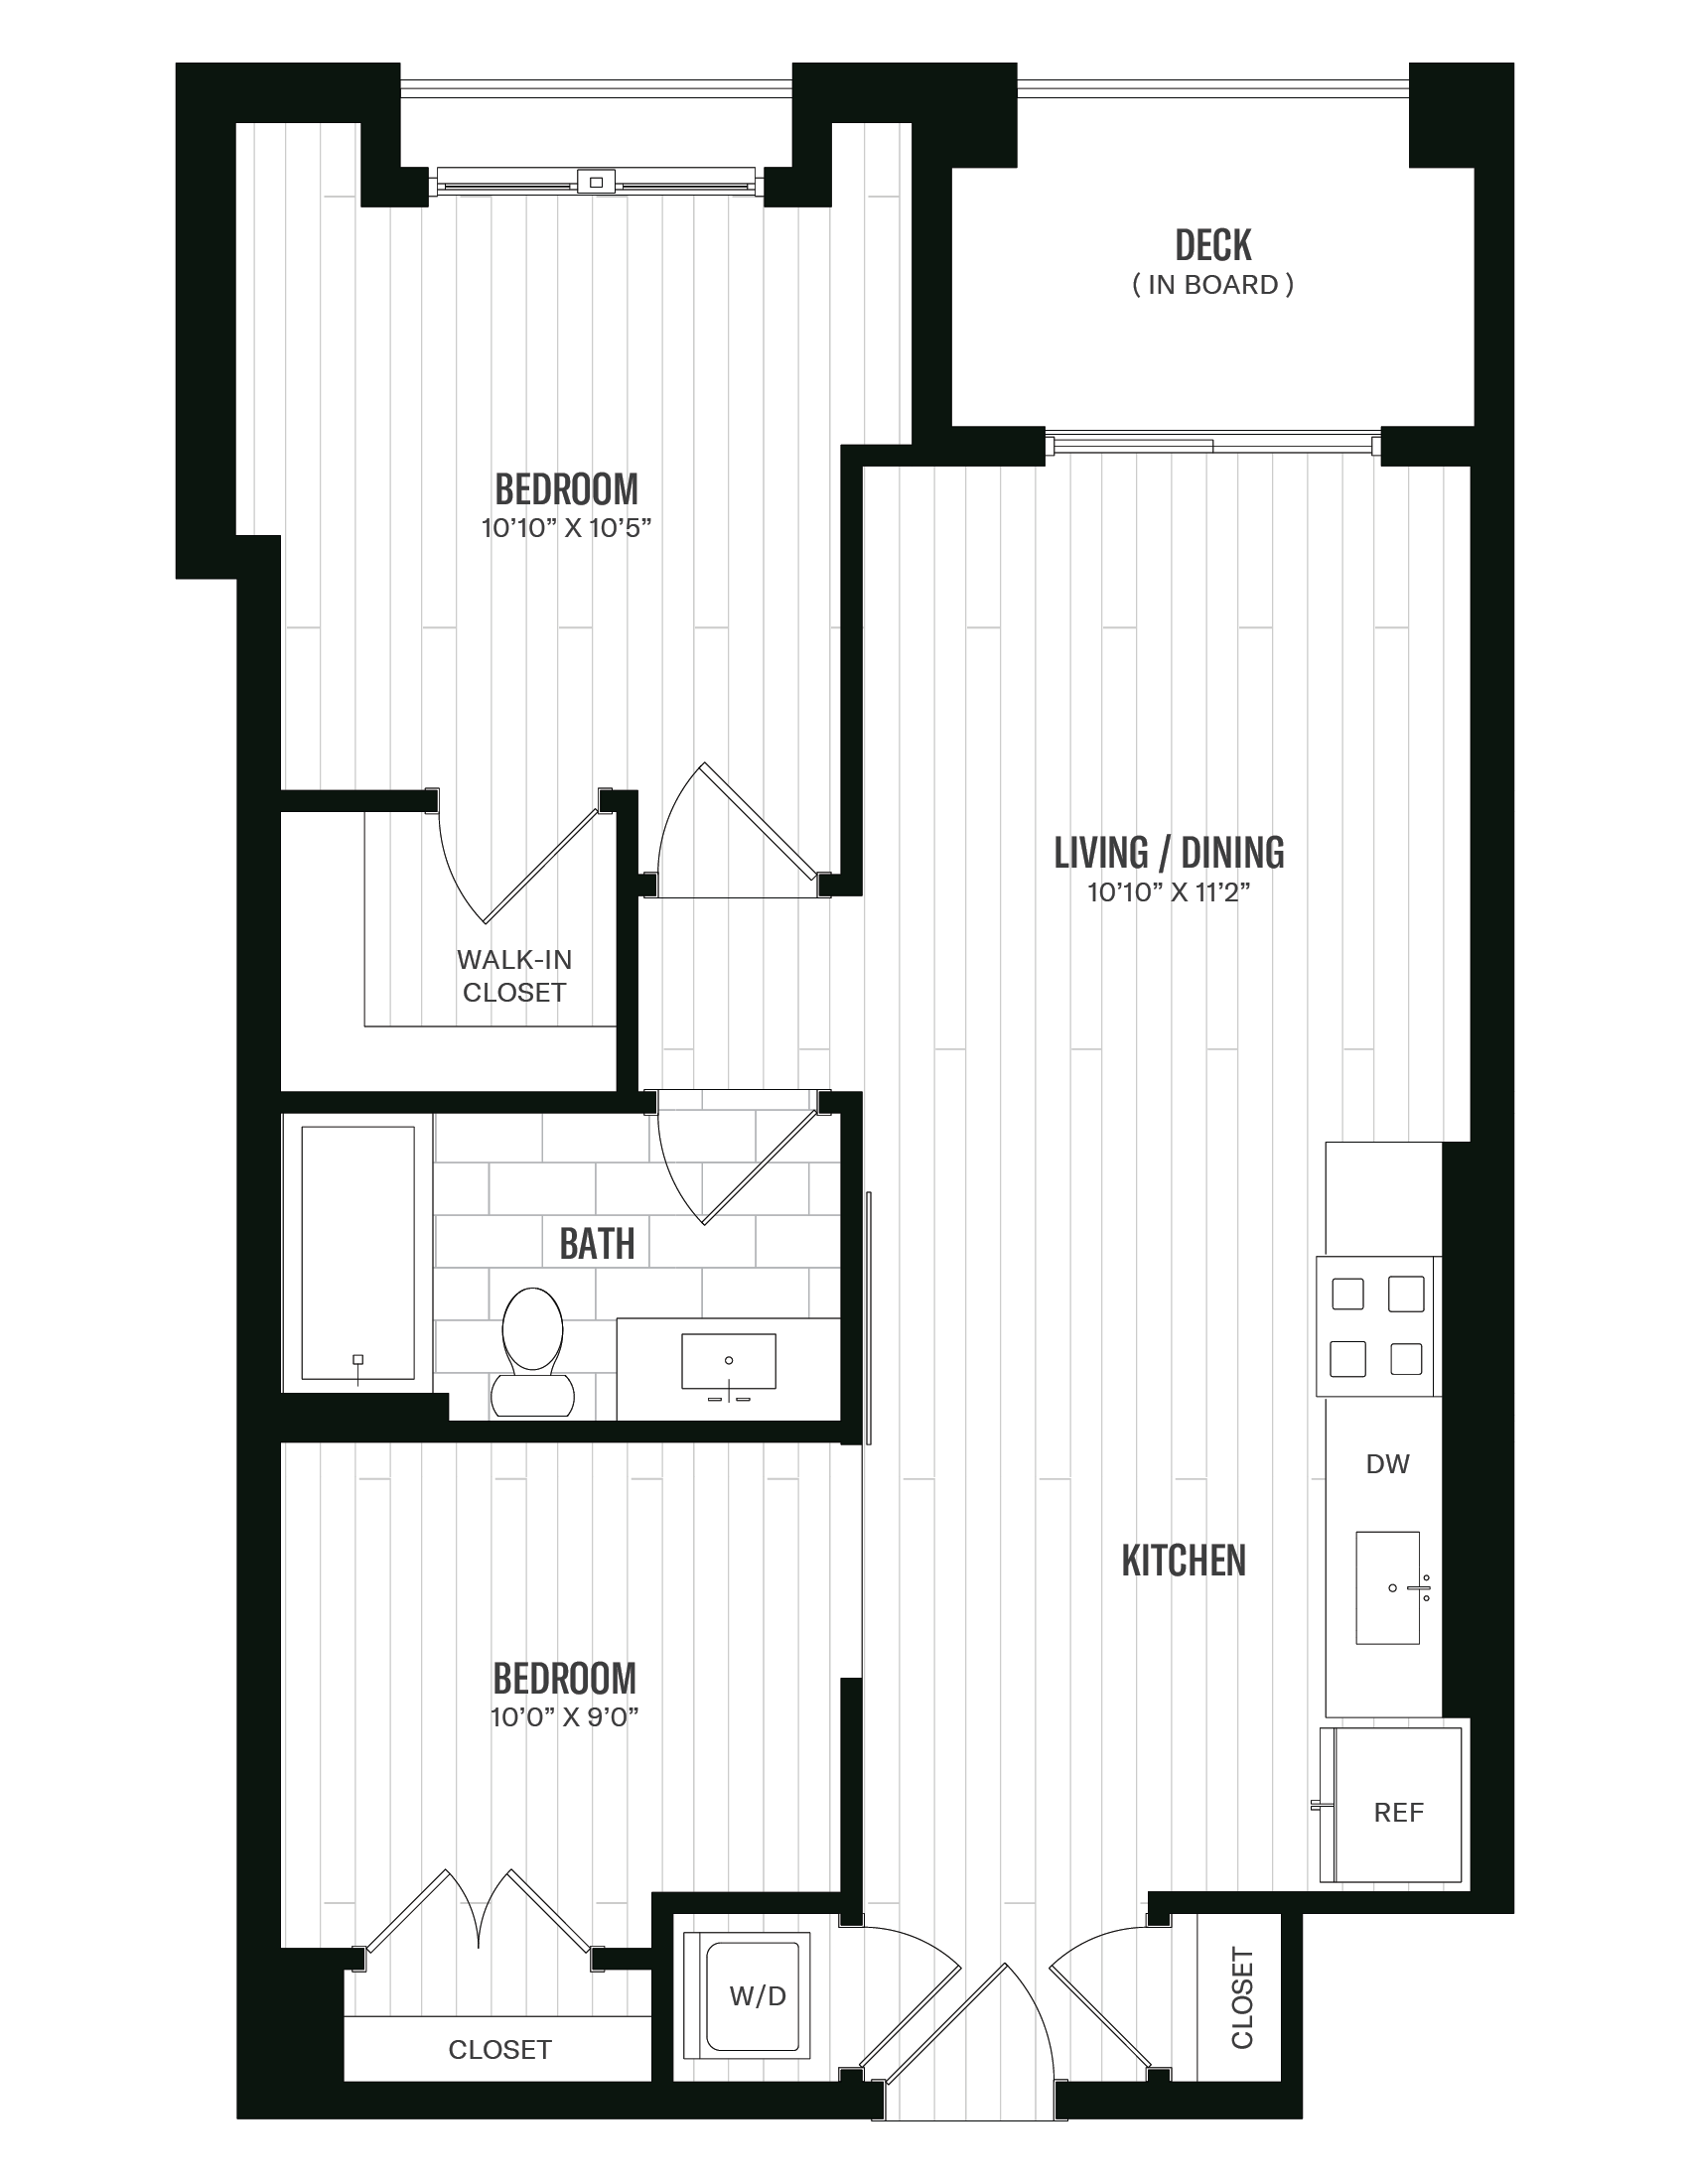 Floorplan image of unit 246